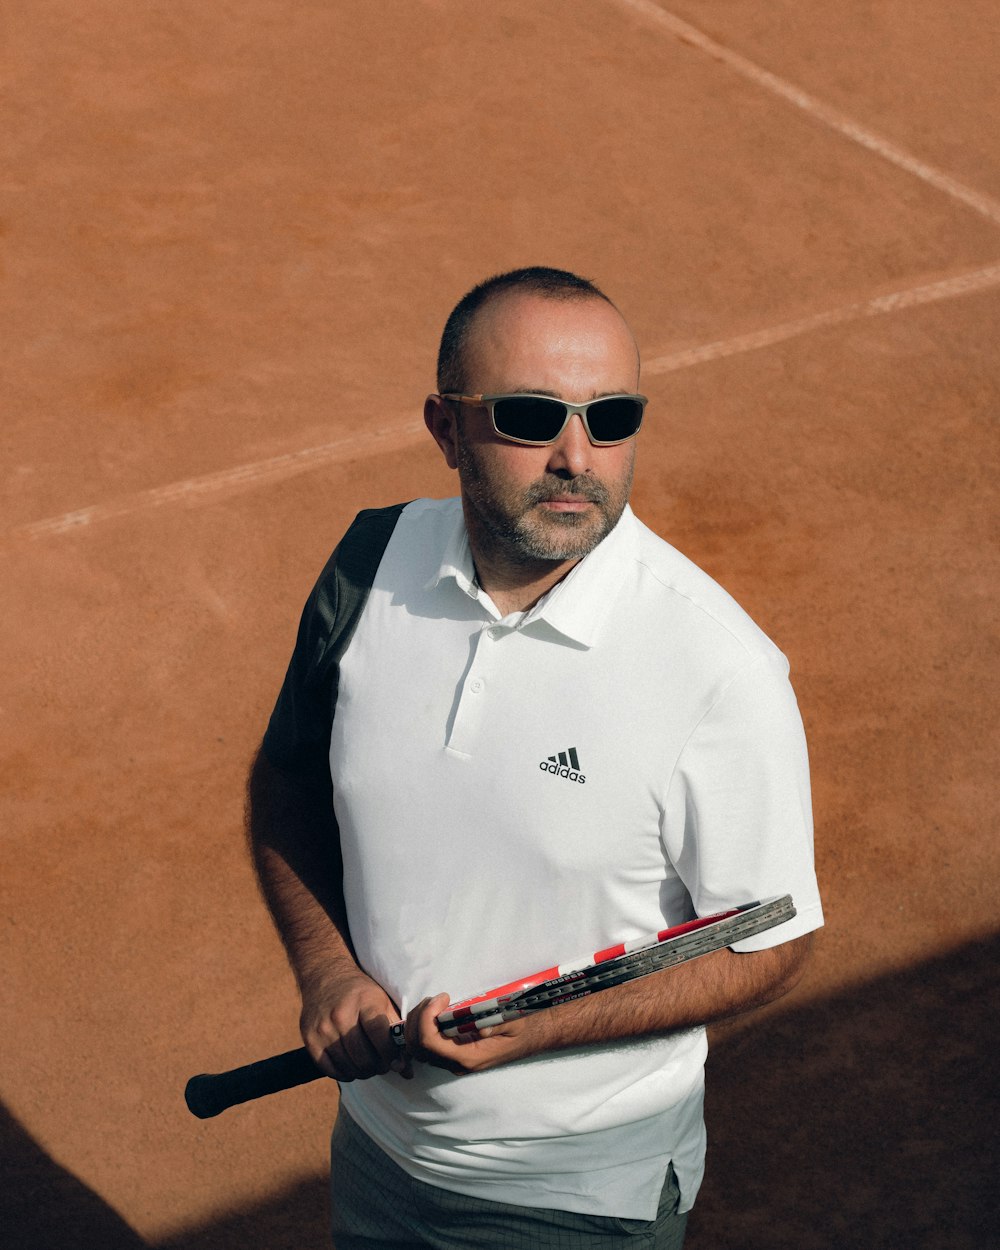 Un homme tenant une raquette de tennis